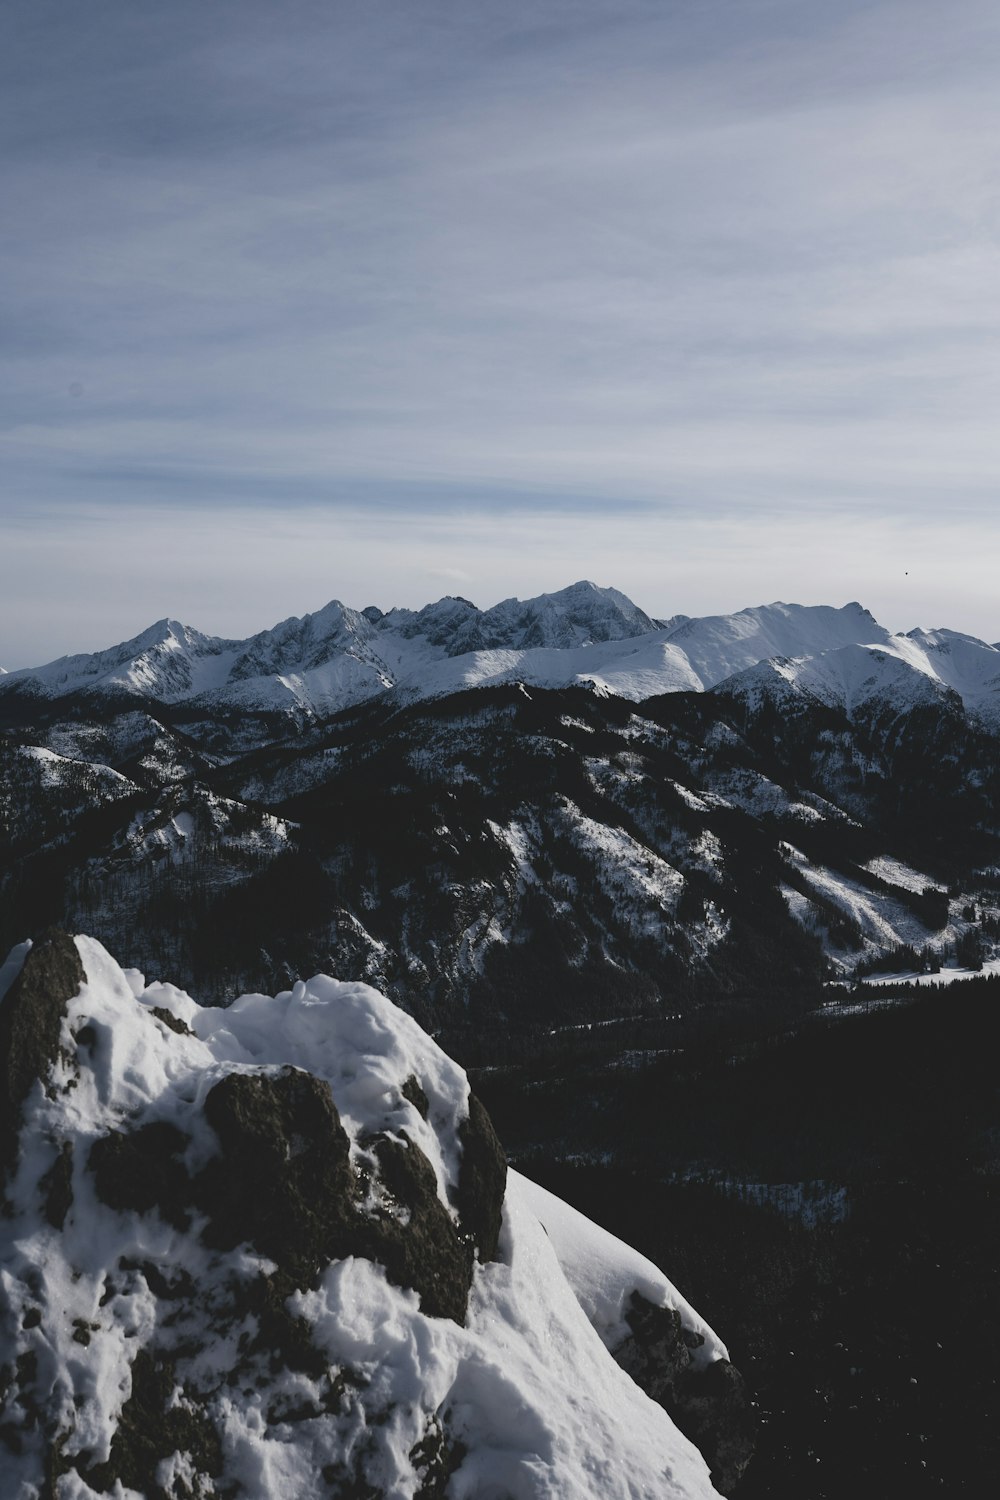 Una persona parada en la cima de una montaña cubierta de nieve